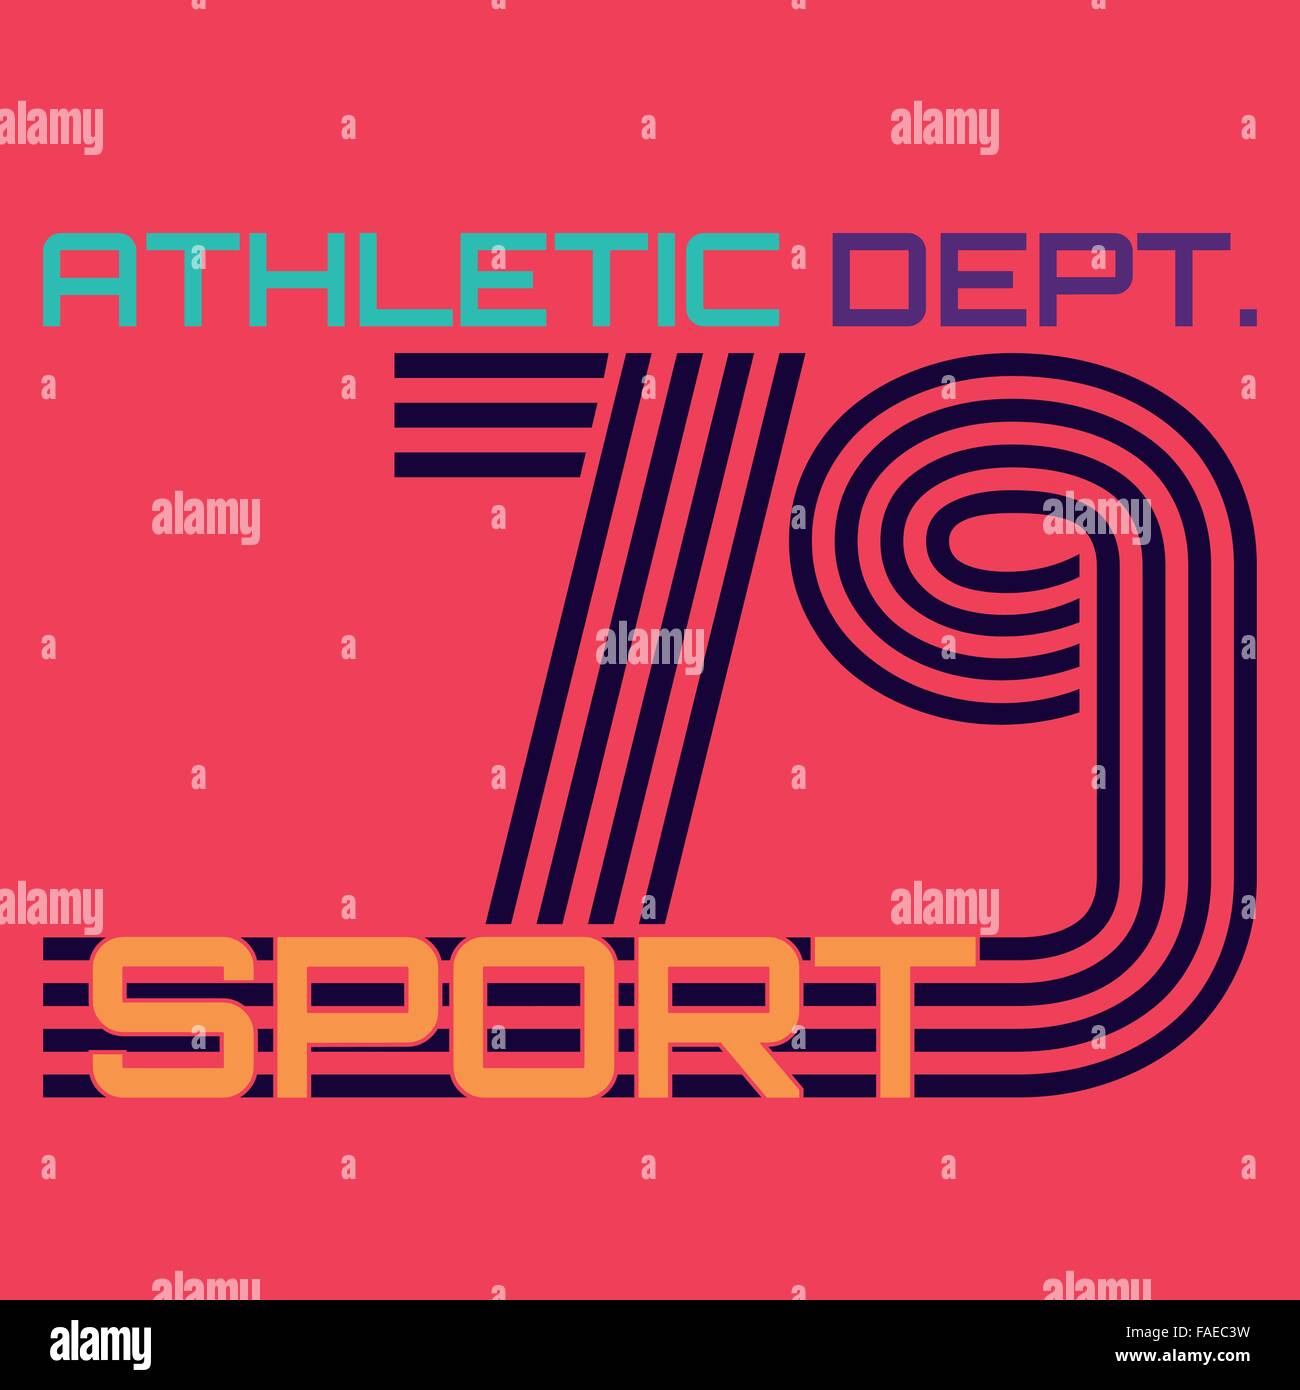 Athletic dept. typographie, t-shirt graphics Illustration de Vecteur